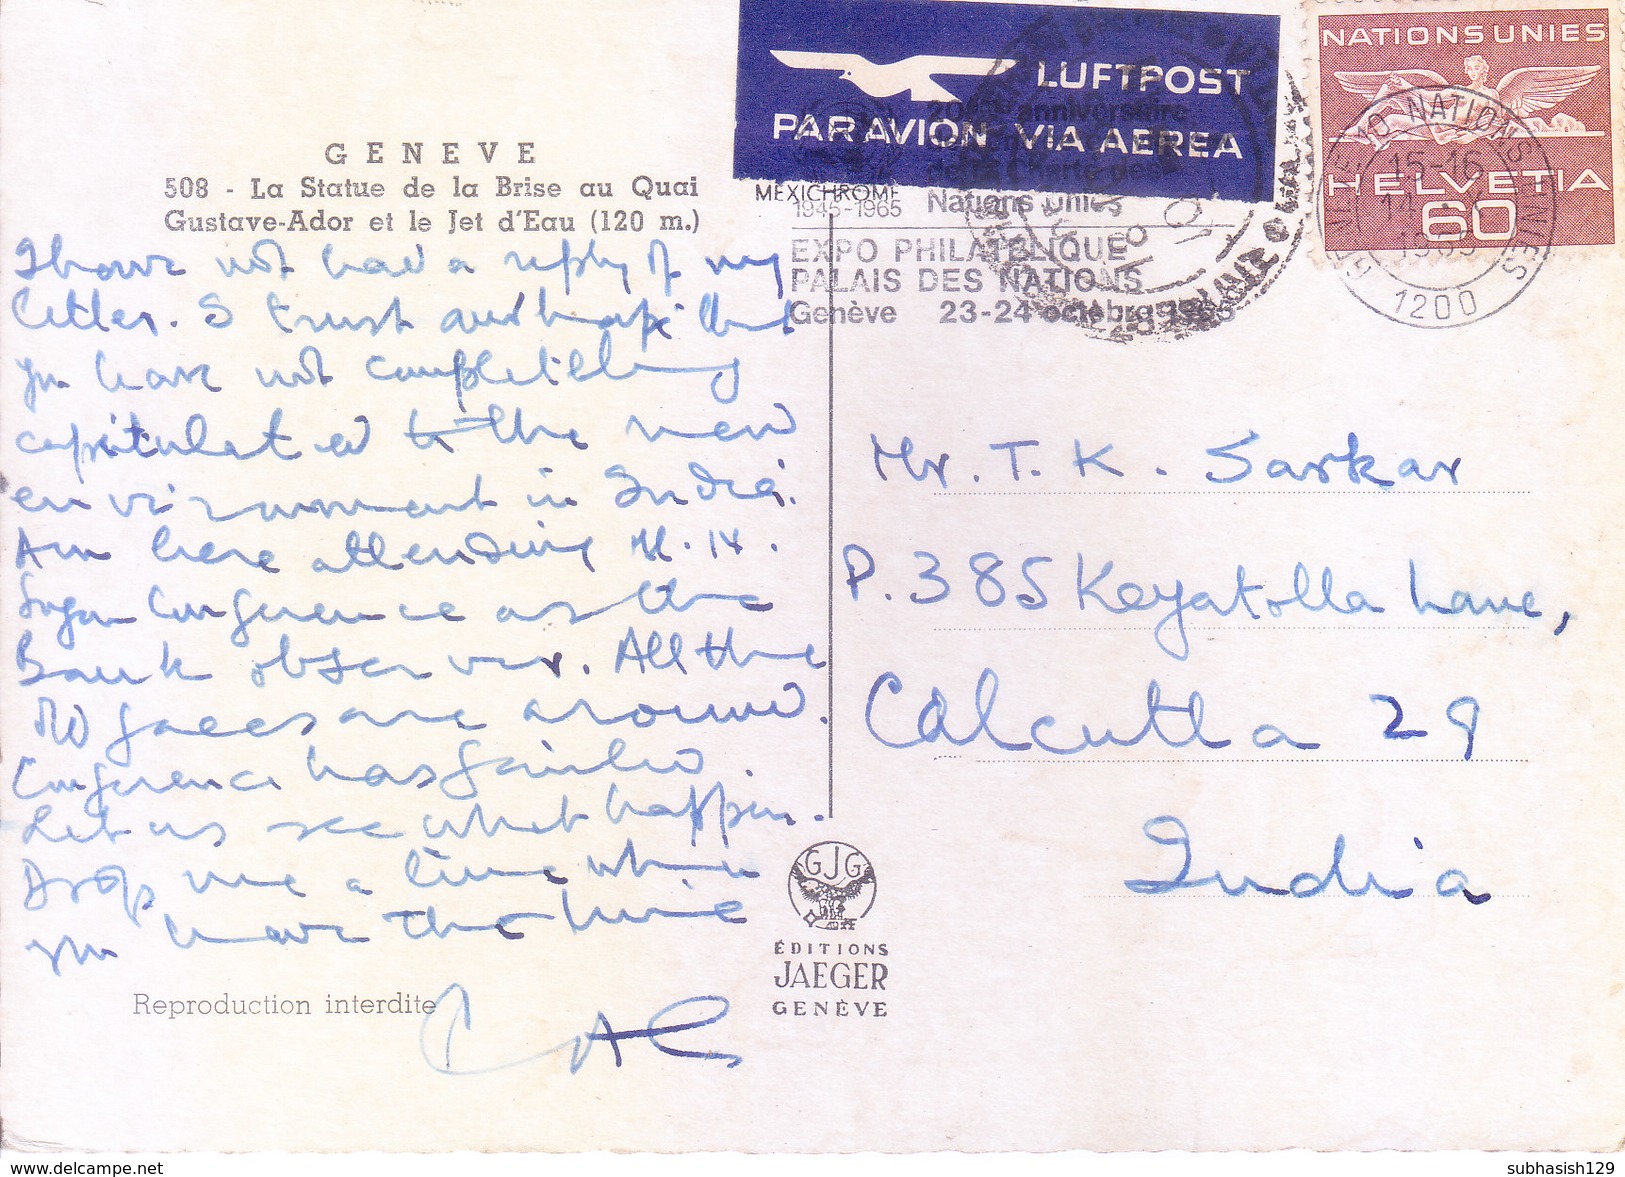 UNITED NATION, GENEVA - COLOUR PICTURE POST CARD - POSTED FOR INDIA, 1965 - LA STATUE DE LA BRISE AU QUAI GUSTAVE ADOR - World